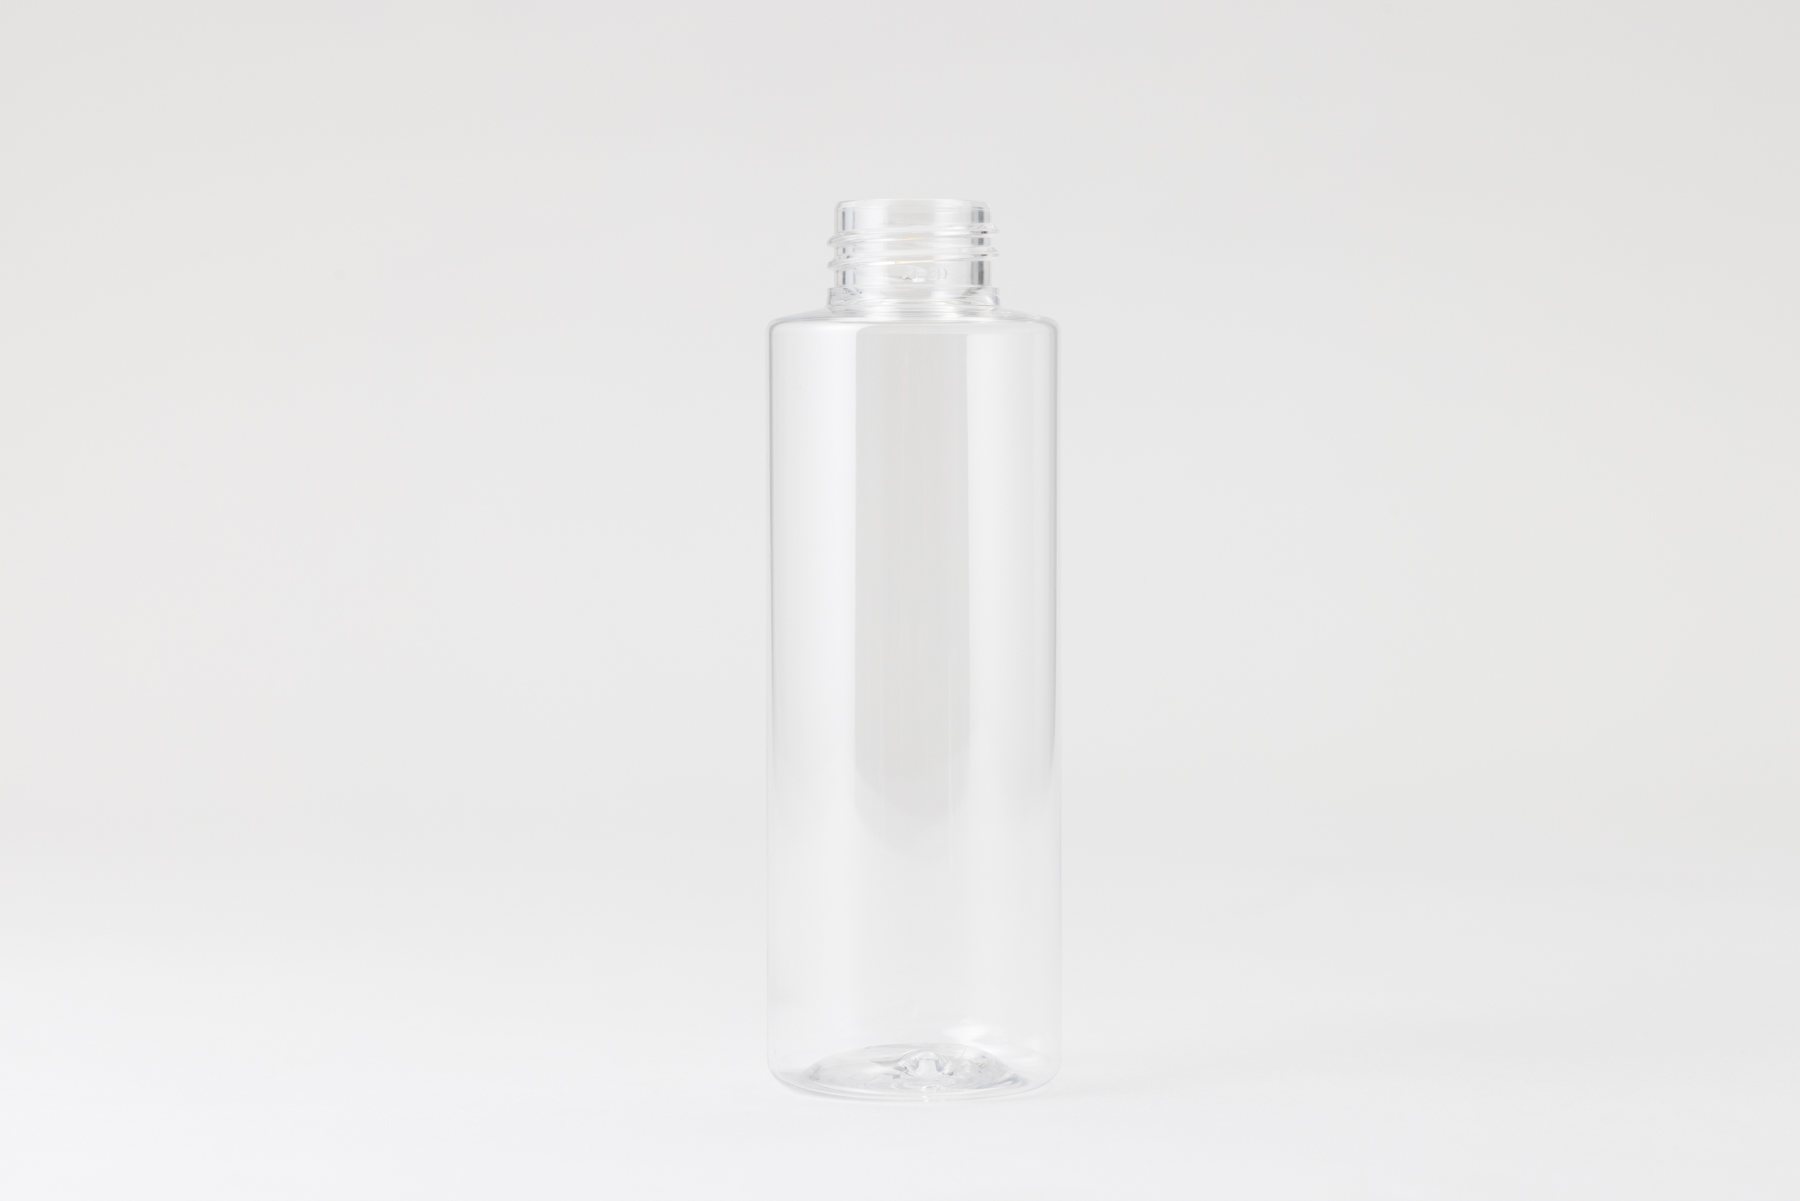 【化粧品容器】小ロット在庫対応の標準ナチュラル仕様ボトル SB03-120C〈プラスチック〉